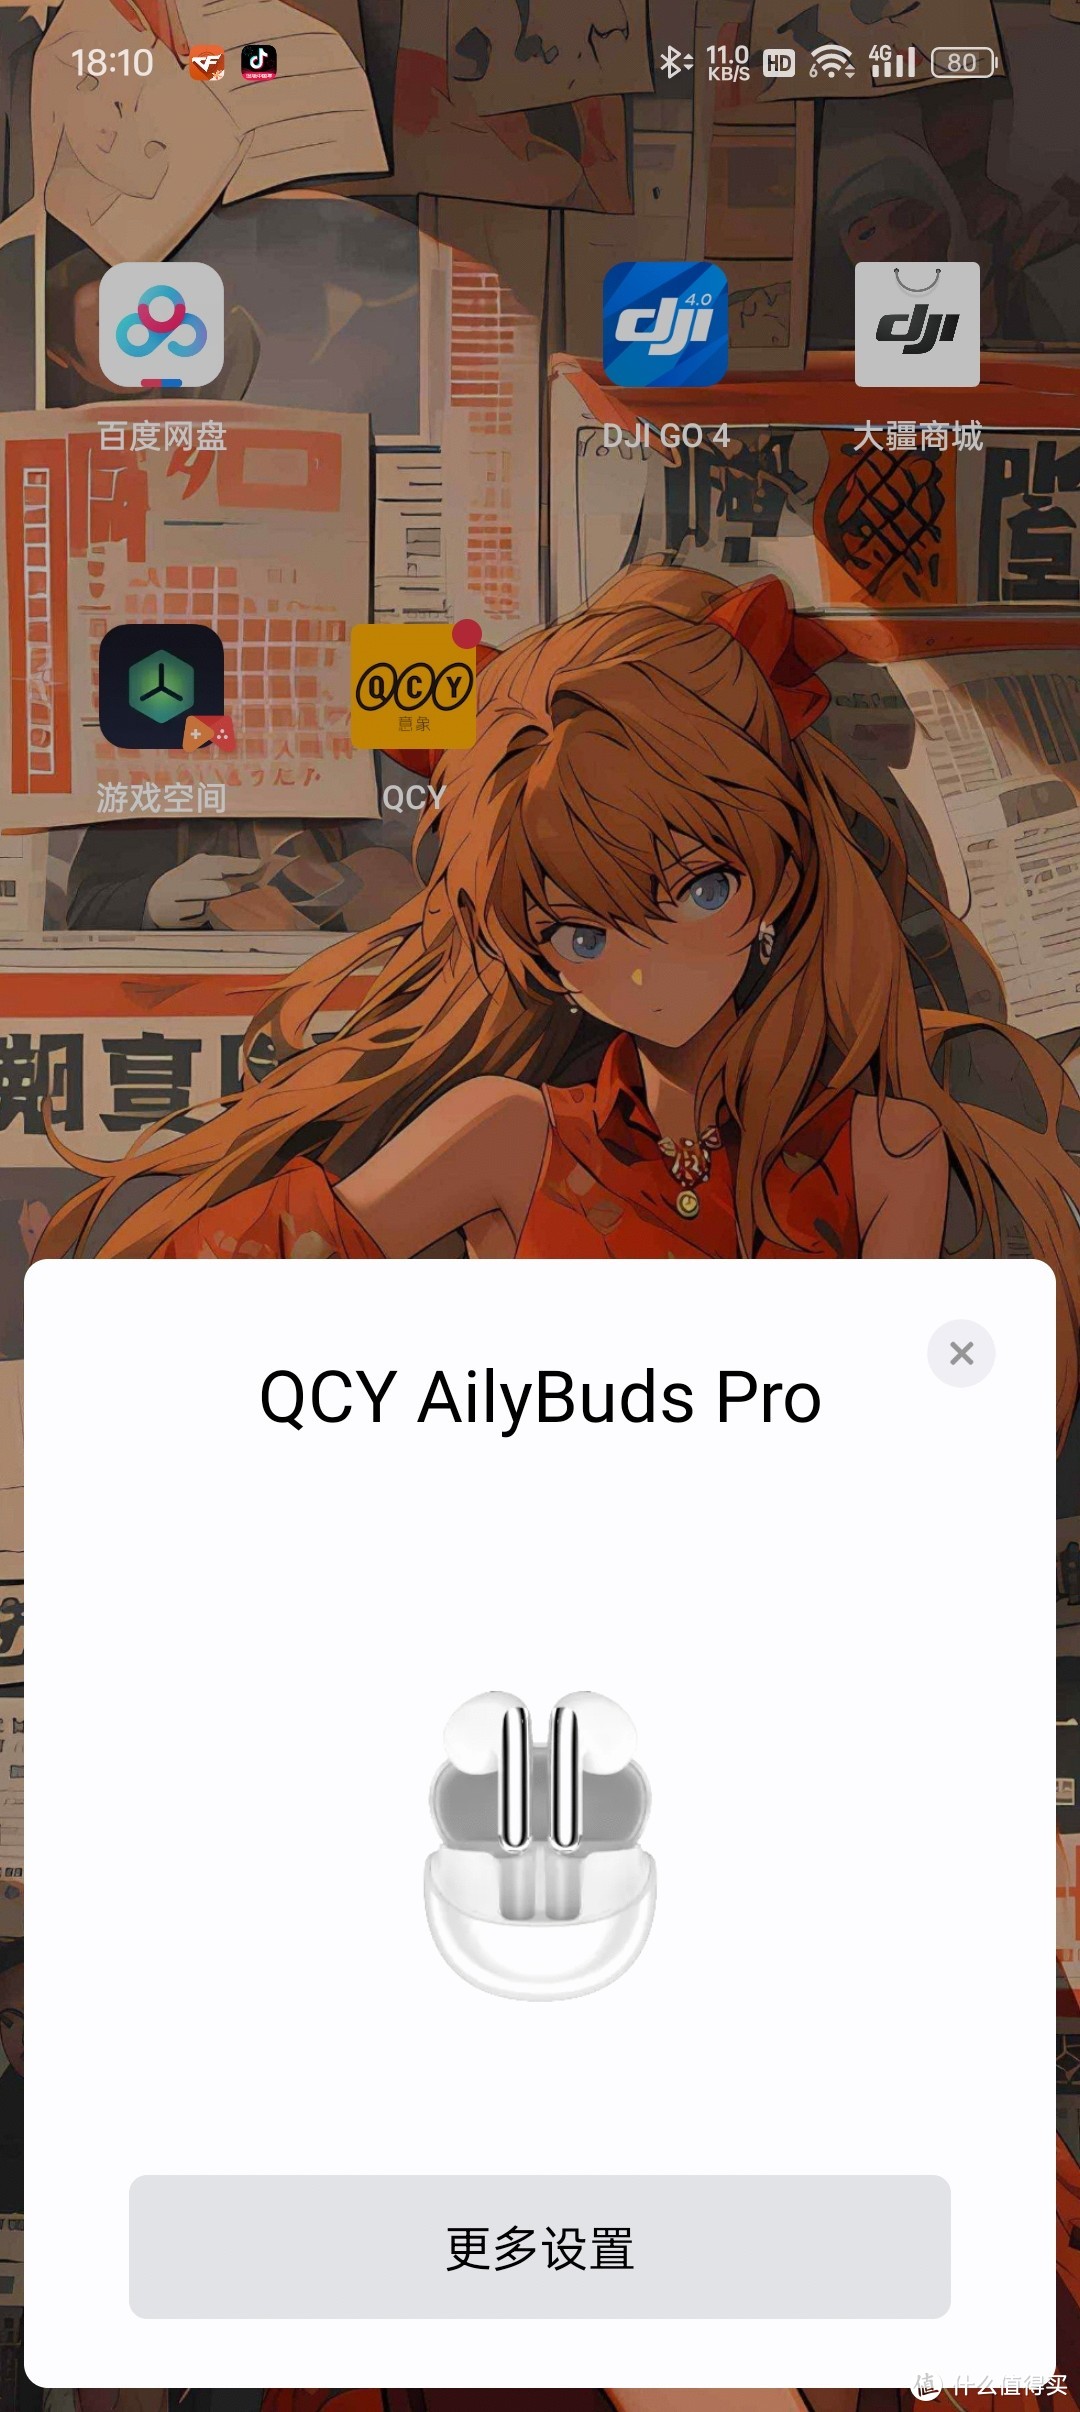 年轻人的第一款半入耳主动降噪耳机-QCY AilyBuds Pro